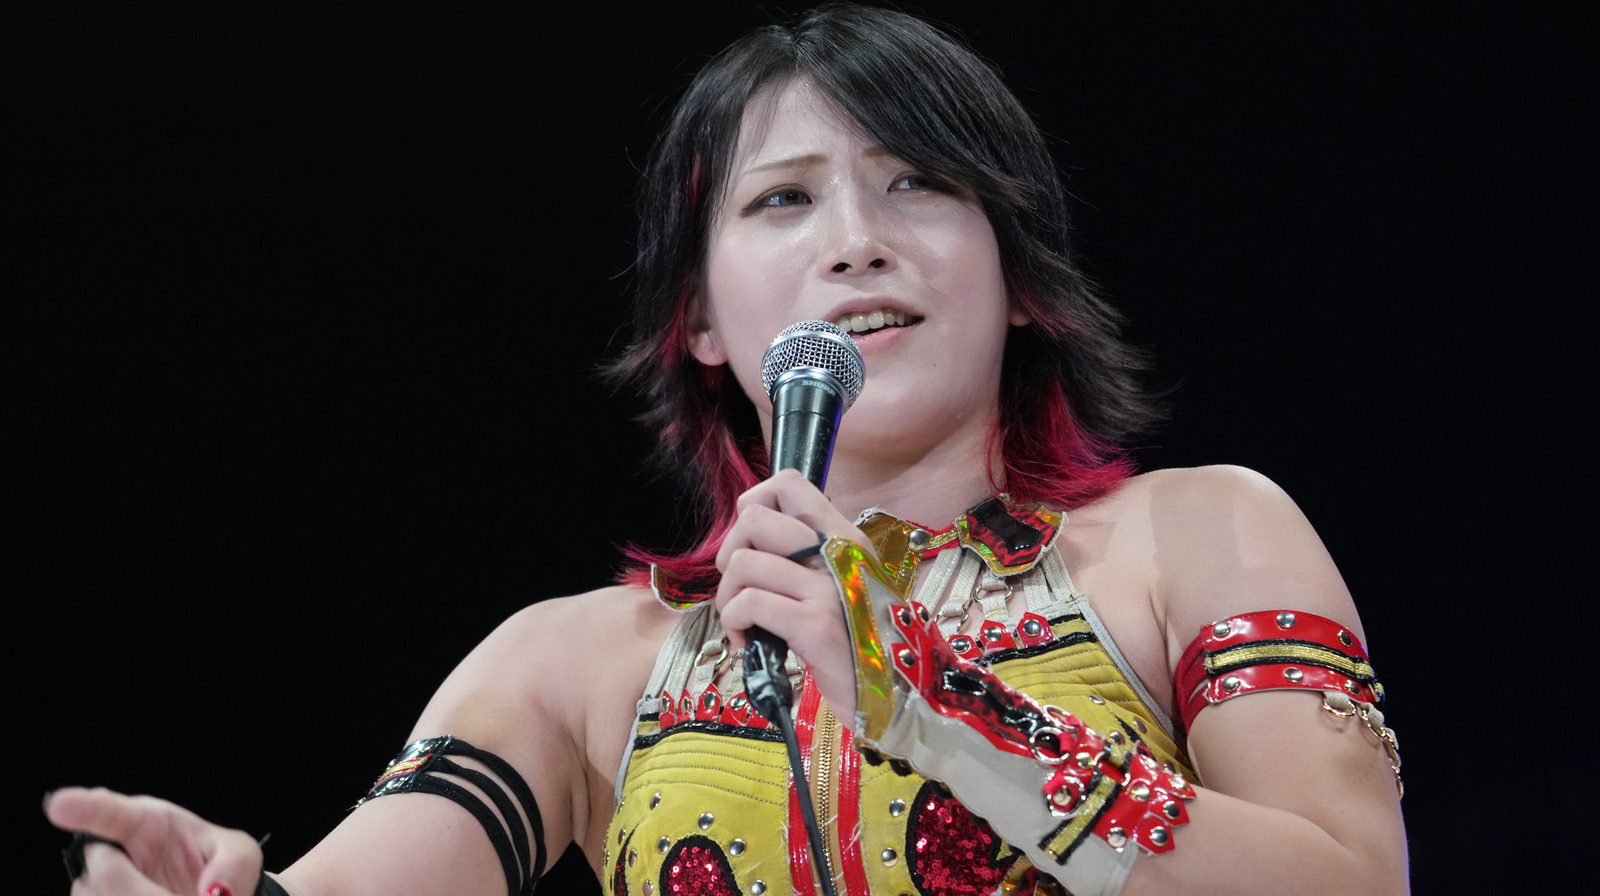 Utami Hayashishita de STARDOM hace su debut en Ring Of Honor en las grabaciones de AEW Calgary